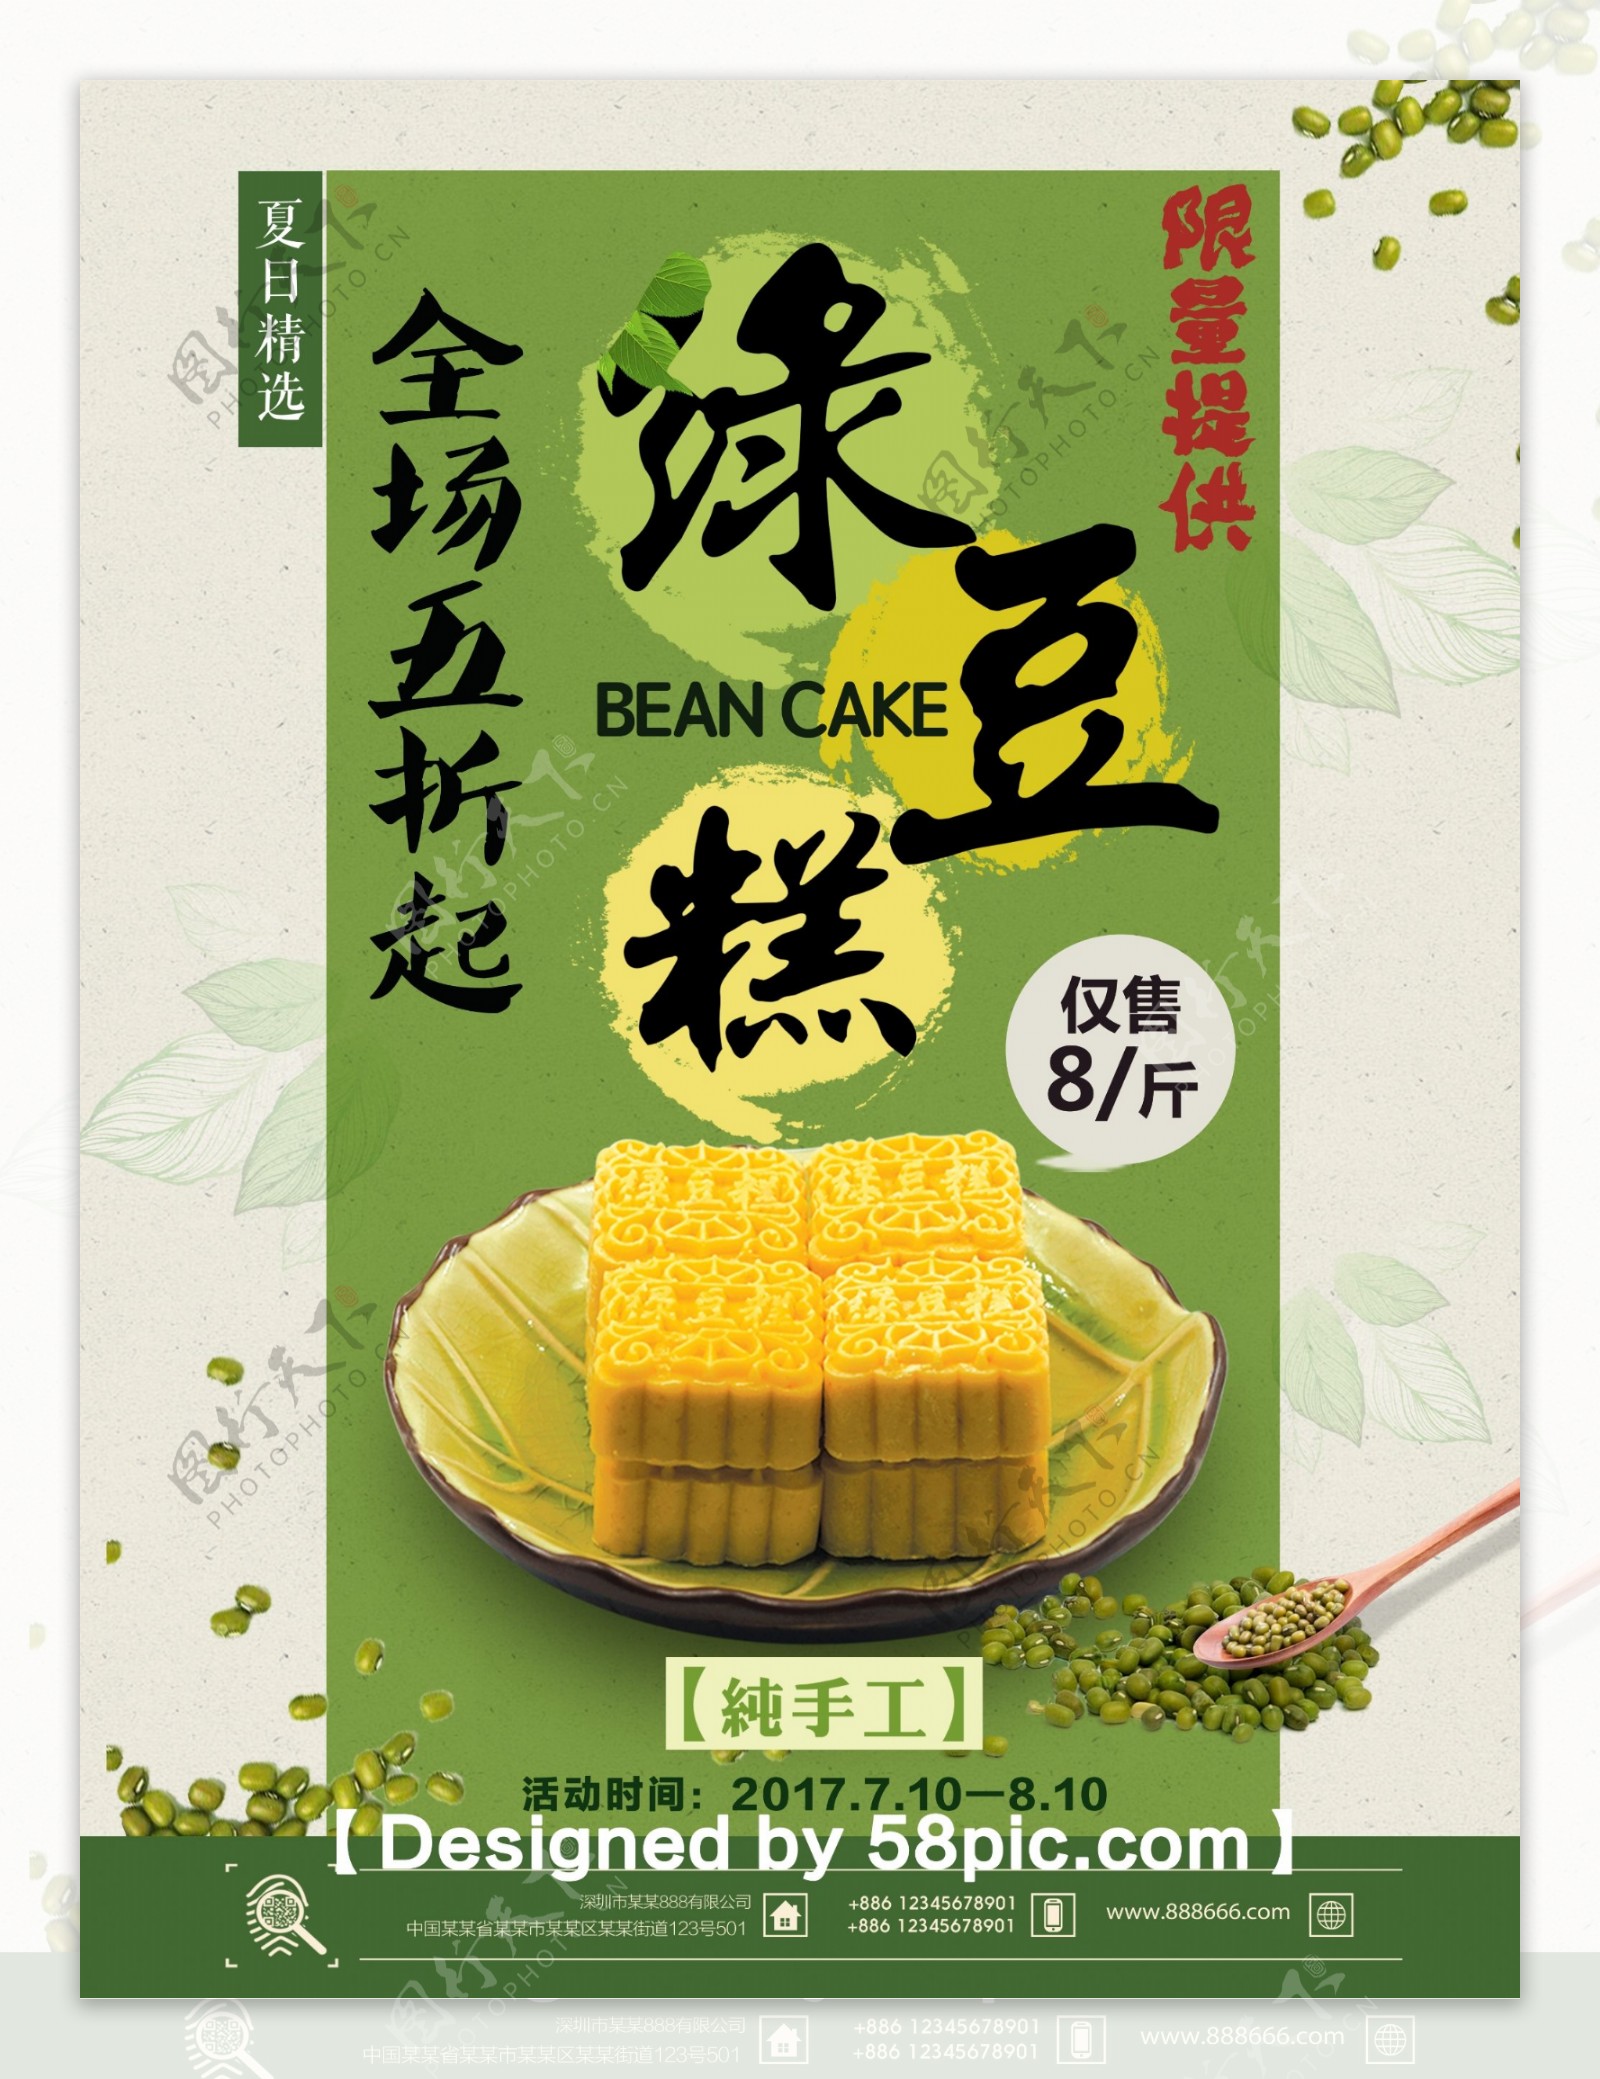 清新夏日美食绿豆糕促销海报